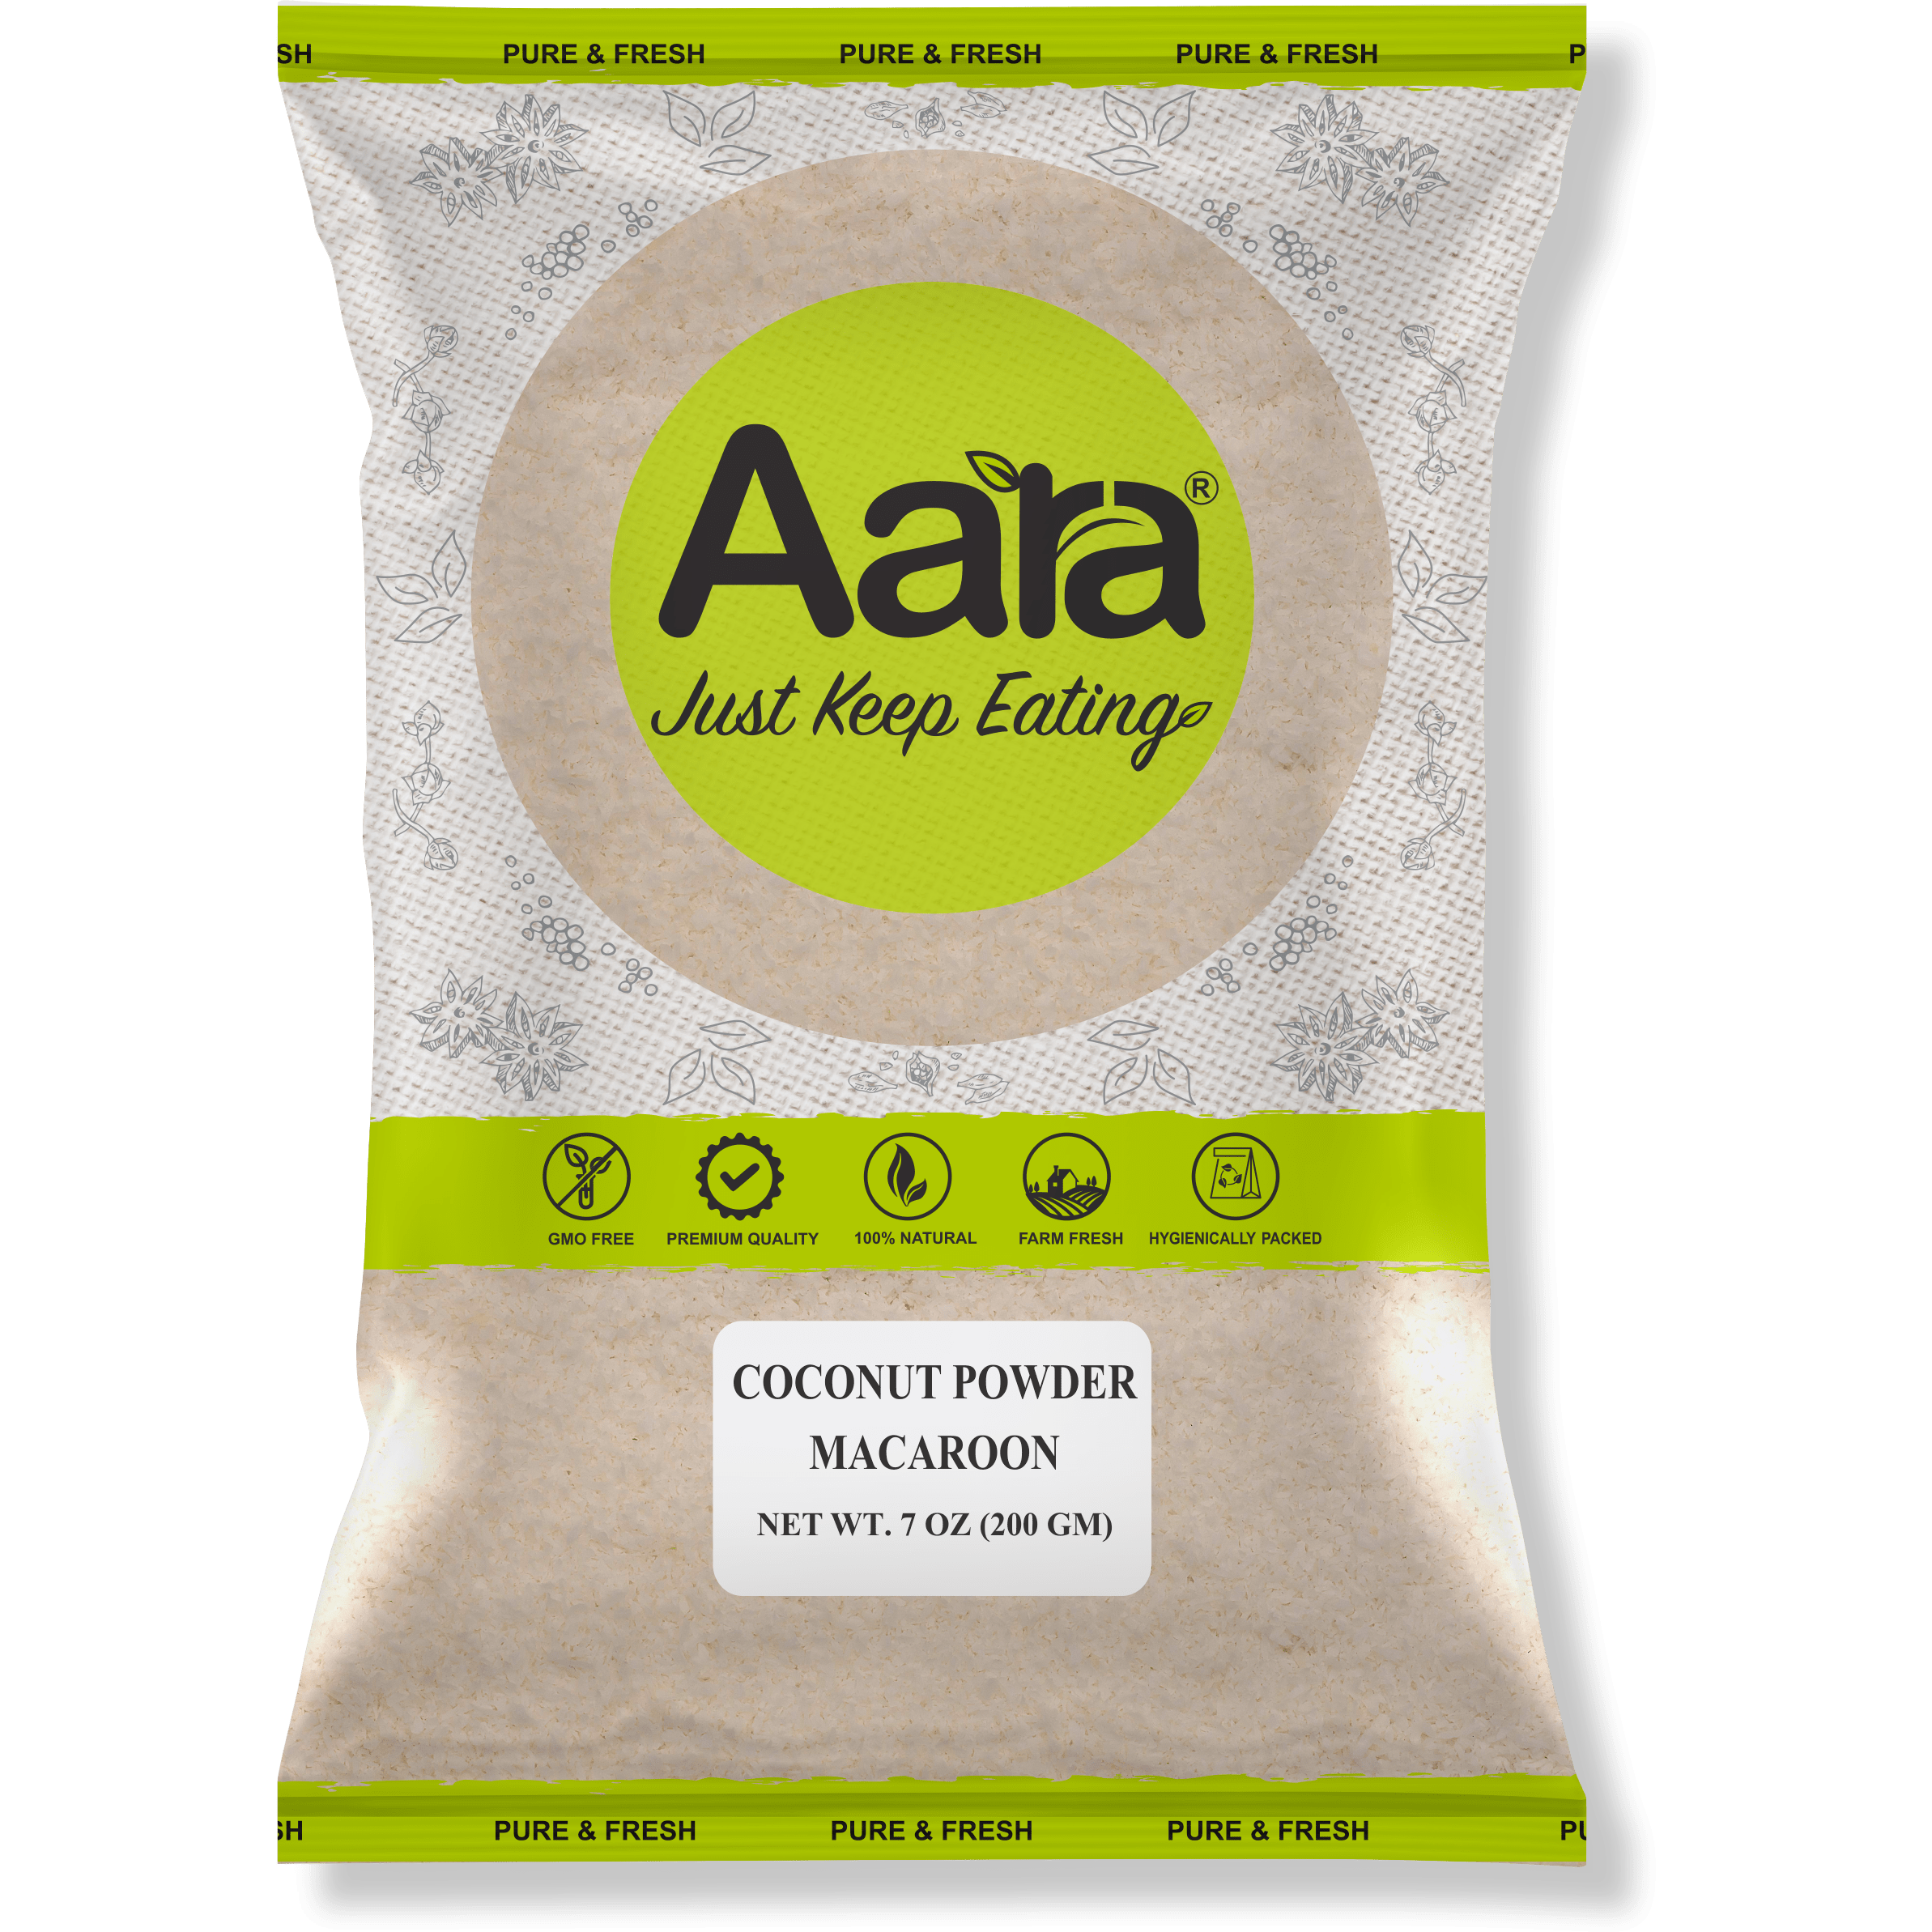 Aara Coconut Powder Macaroon - 7 oz